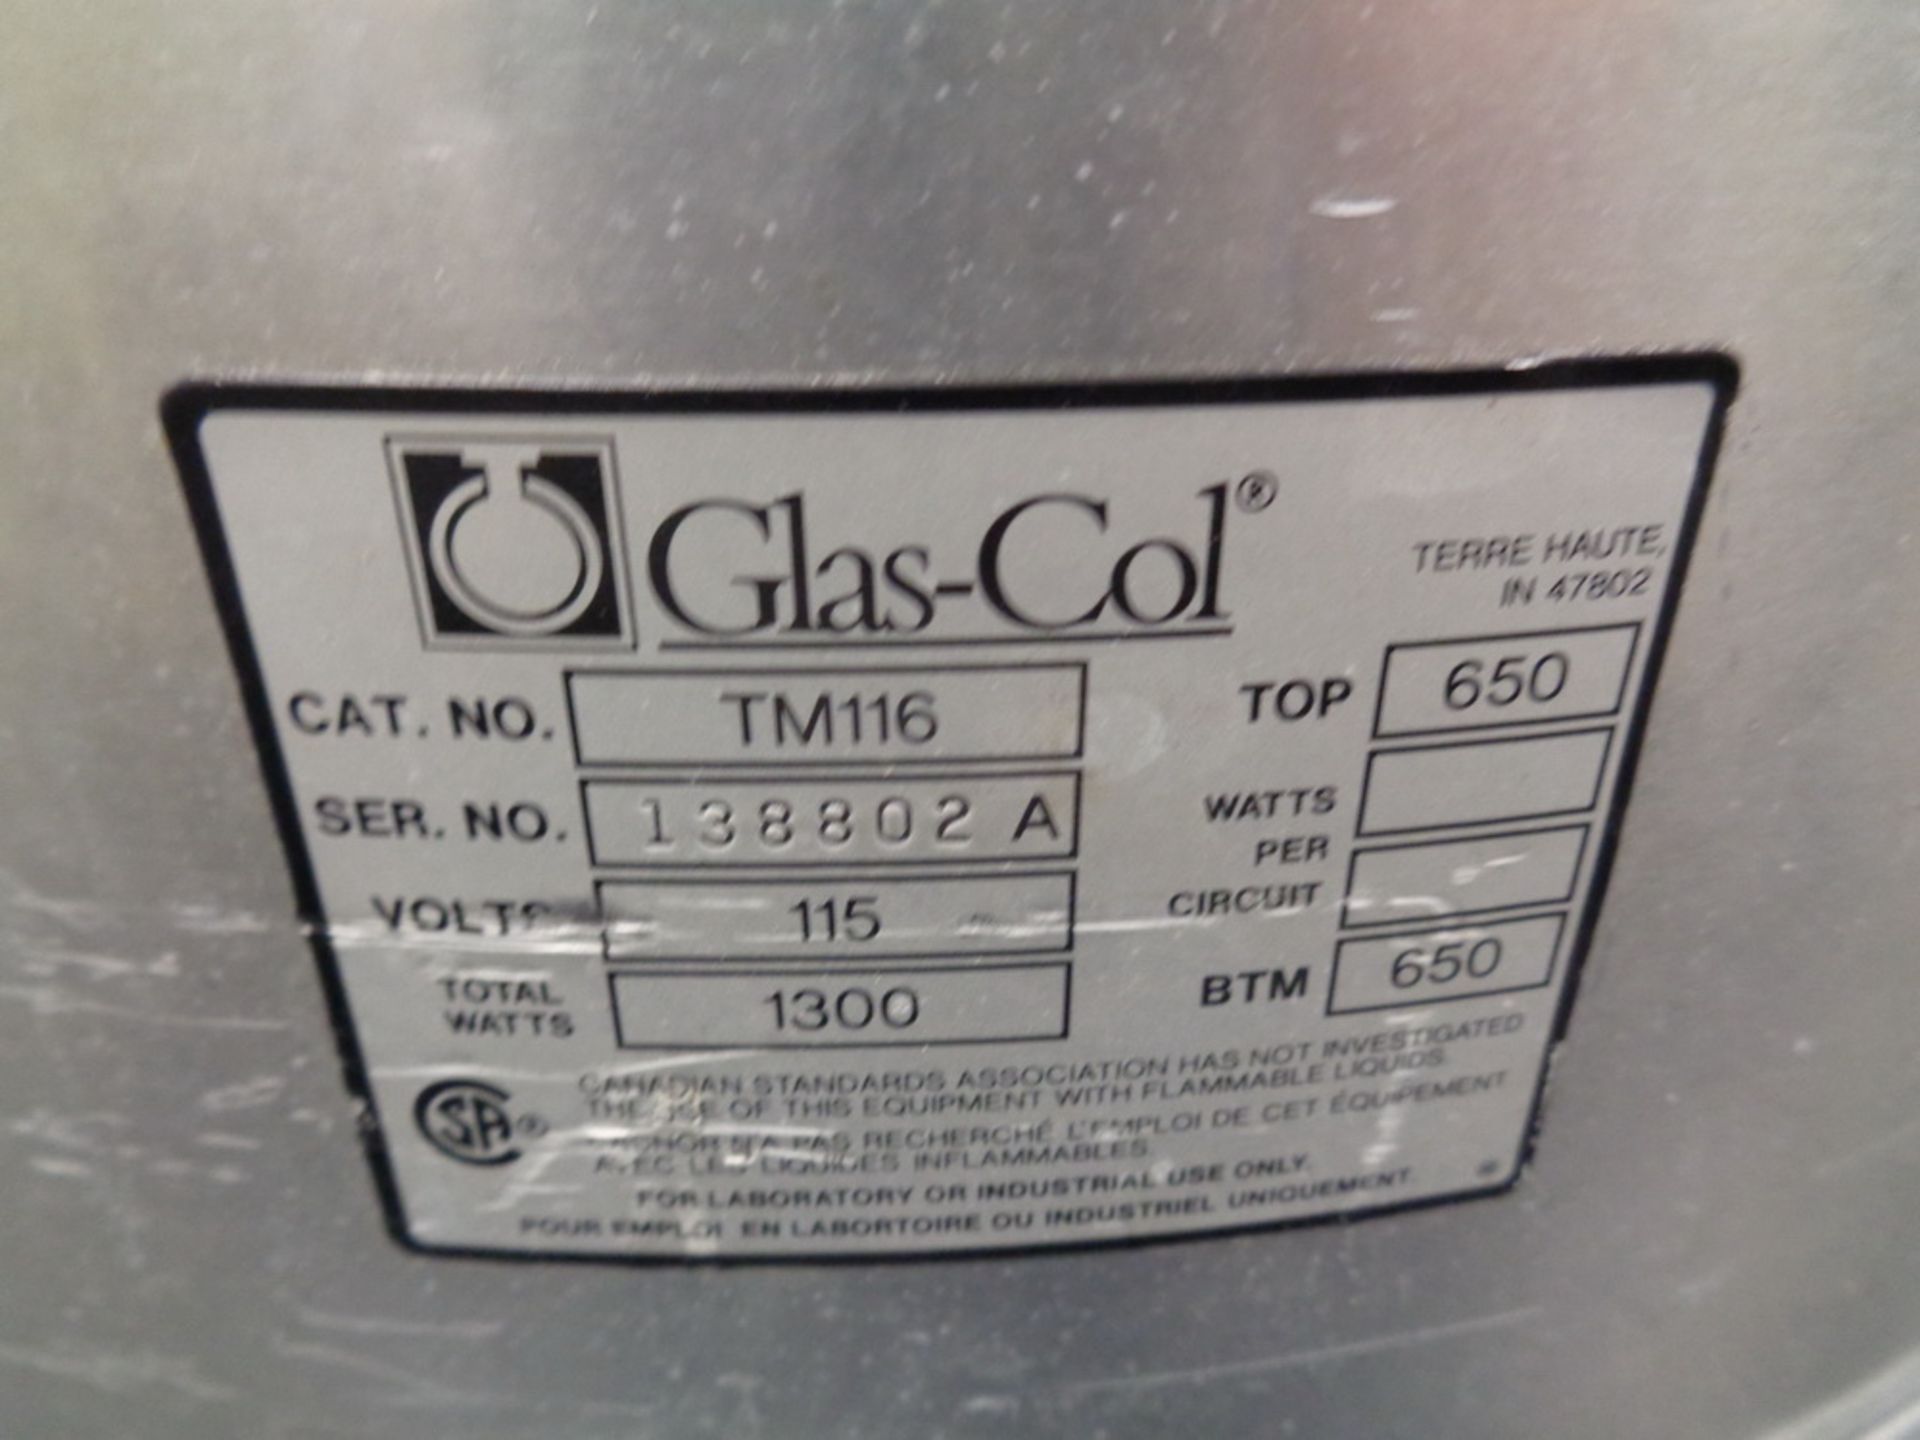 Glas-Col Heating Mantle, TM116 - Image 2 of 2